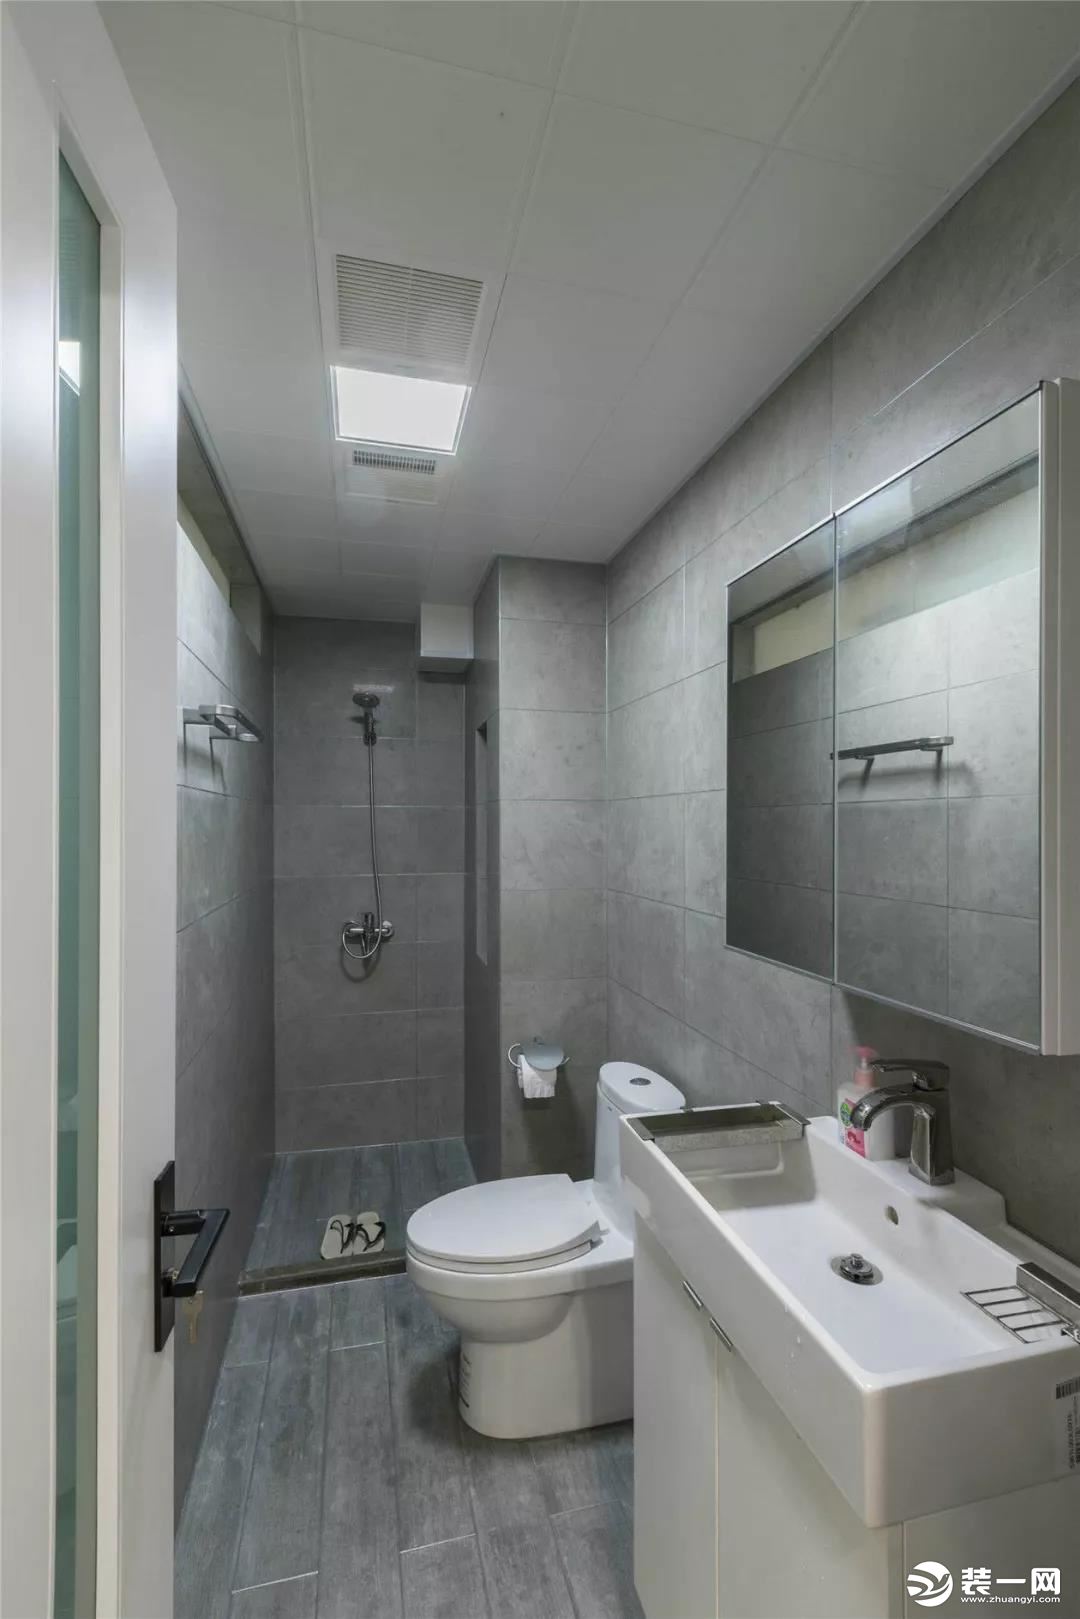 卫生间内通铺灰色调的哑光砖，搭配白色的卫具看起来很简洁、轻松。